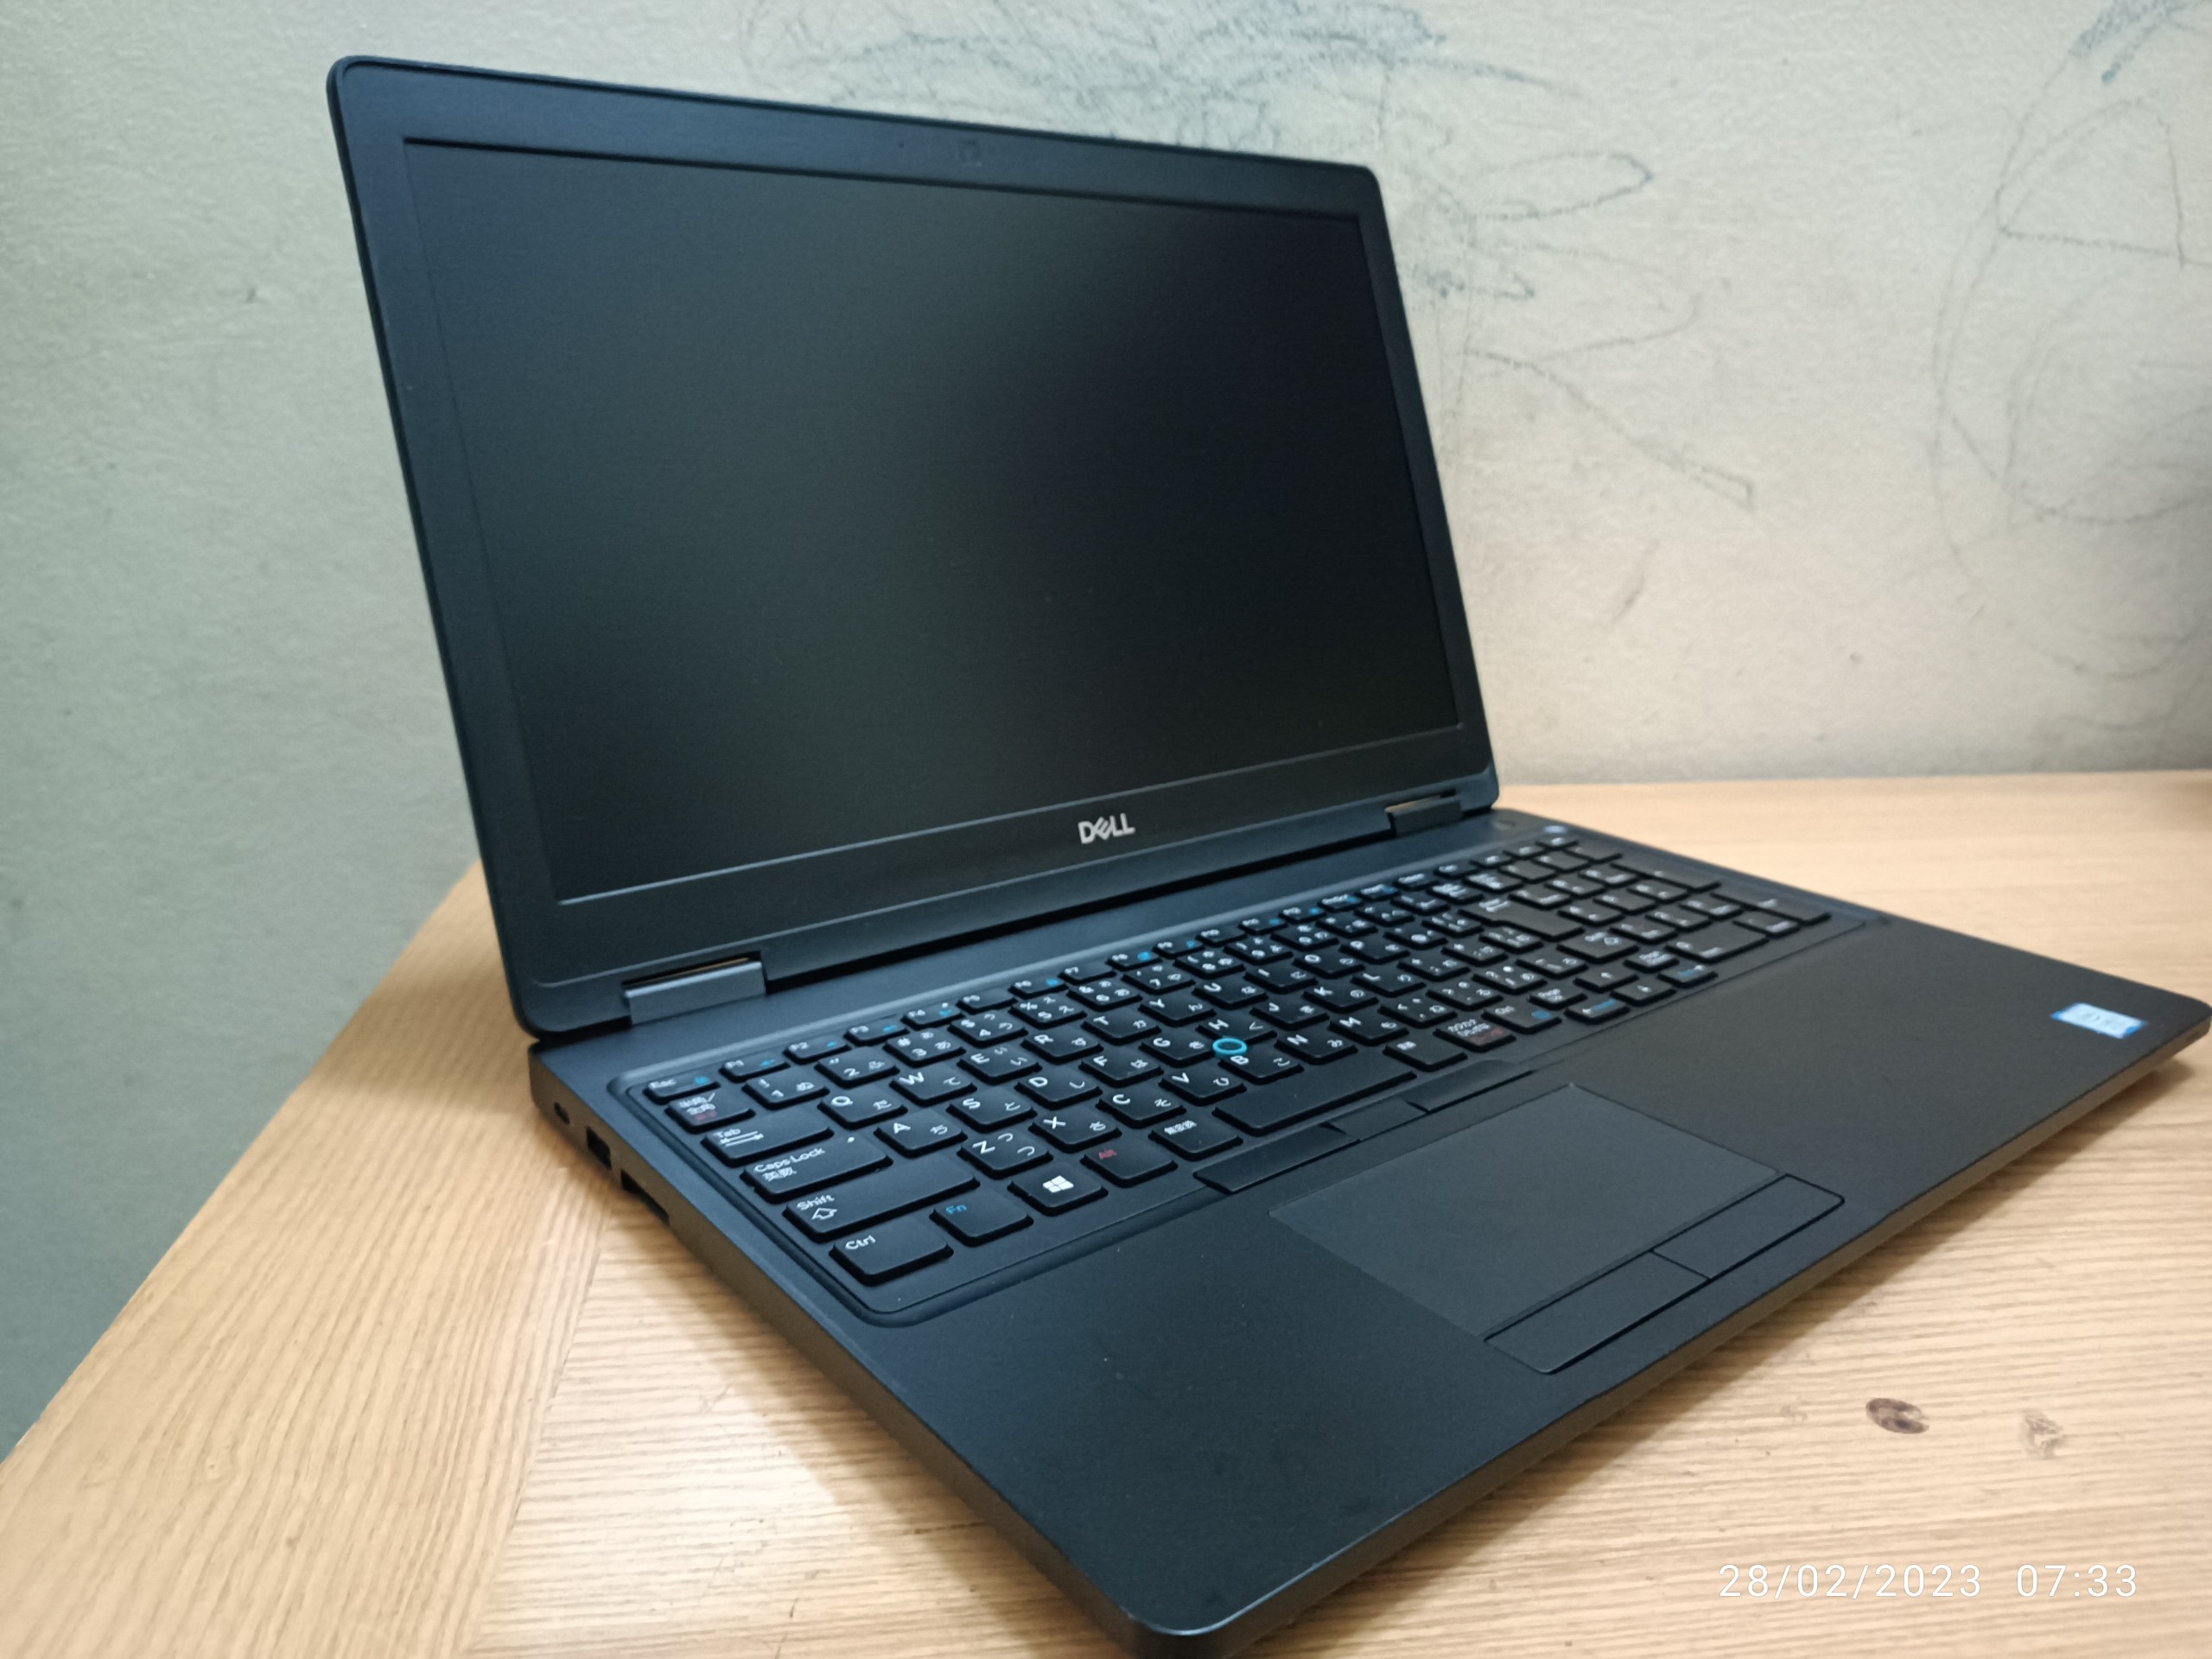 5 Cần bán Laptop Dell core i7 Ram 16Gb, cạc rời  SSD 256Gb Sách tay từ Nhật